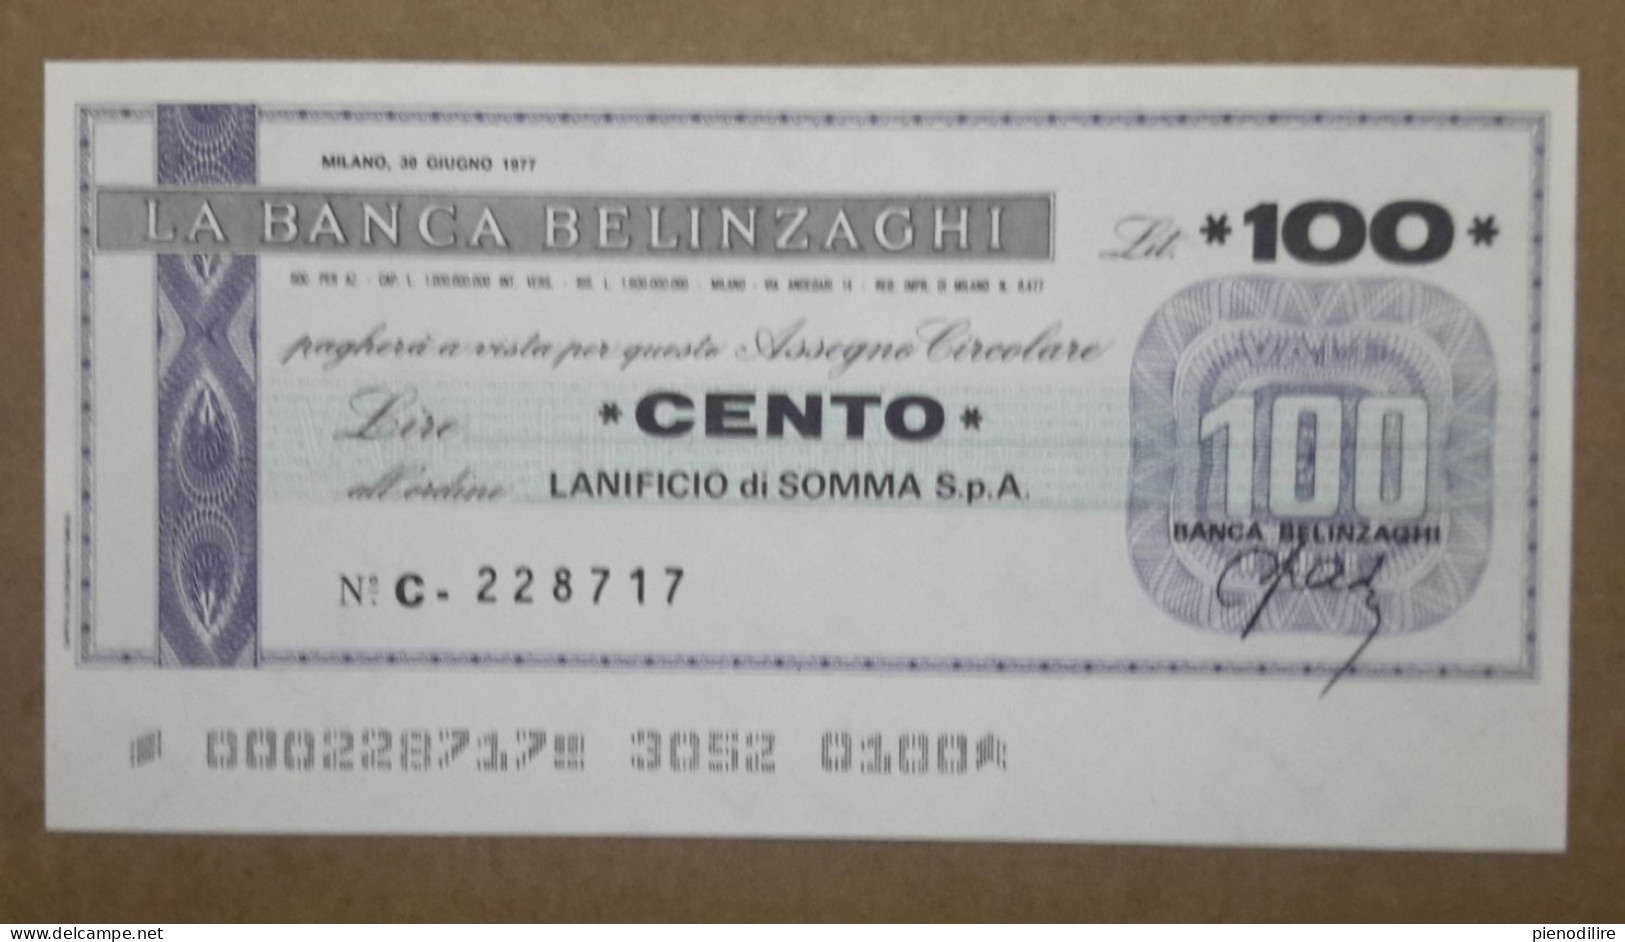 BANCA BELINZAGHI, 100 LIRE 30.06.1977 LANIFICIO SOMMA S.P.A. MILANO (A1.88) - [10] Cheques Y Mini-cheques